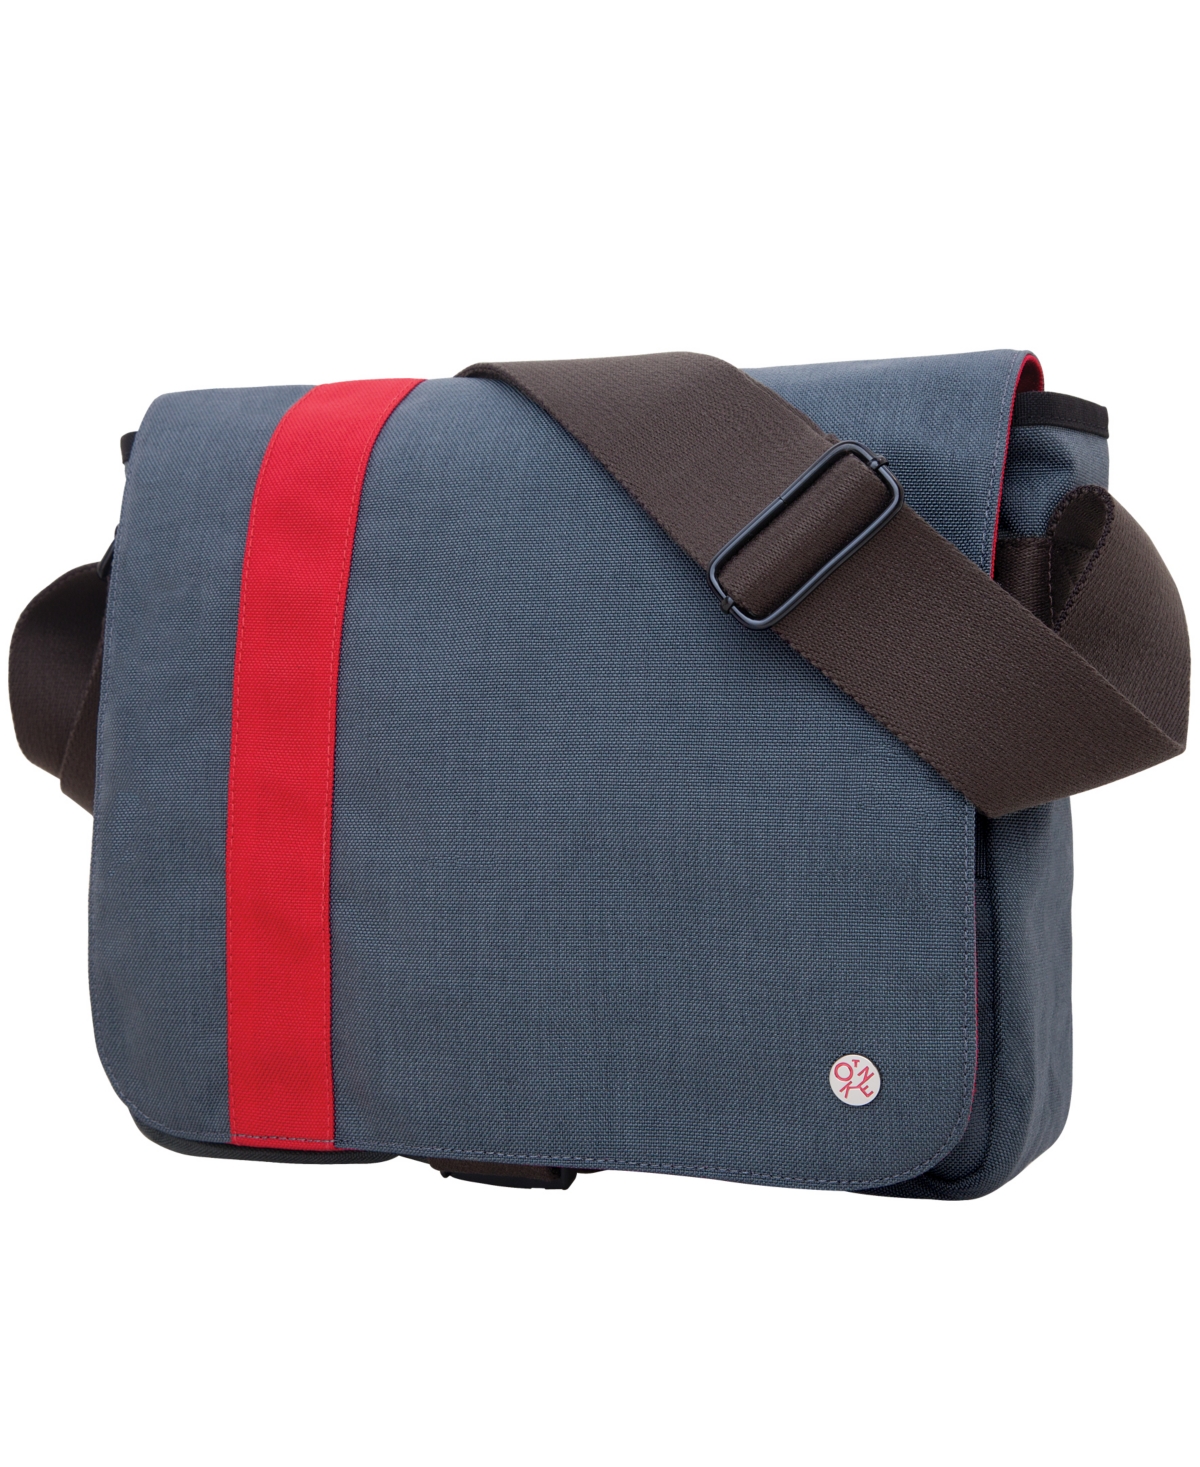 Astor Small Shoulder Bag - Red